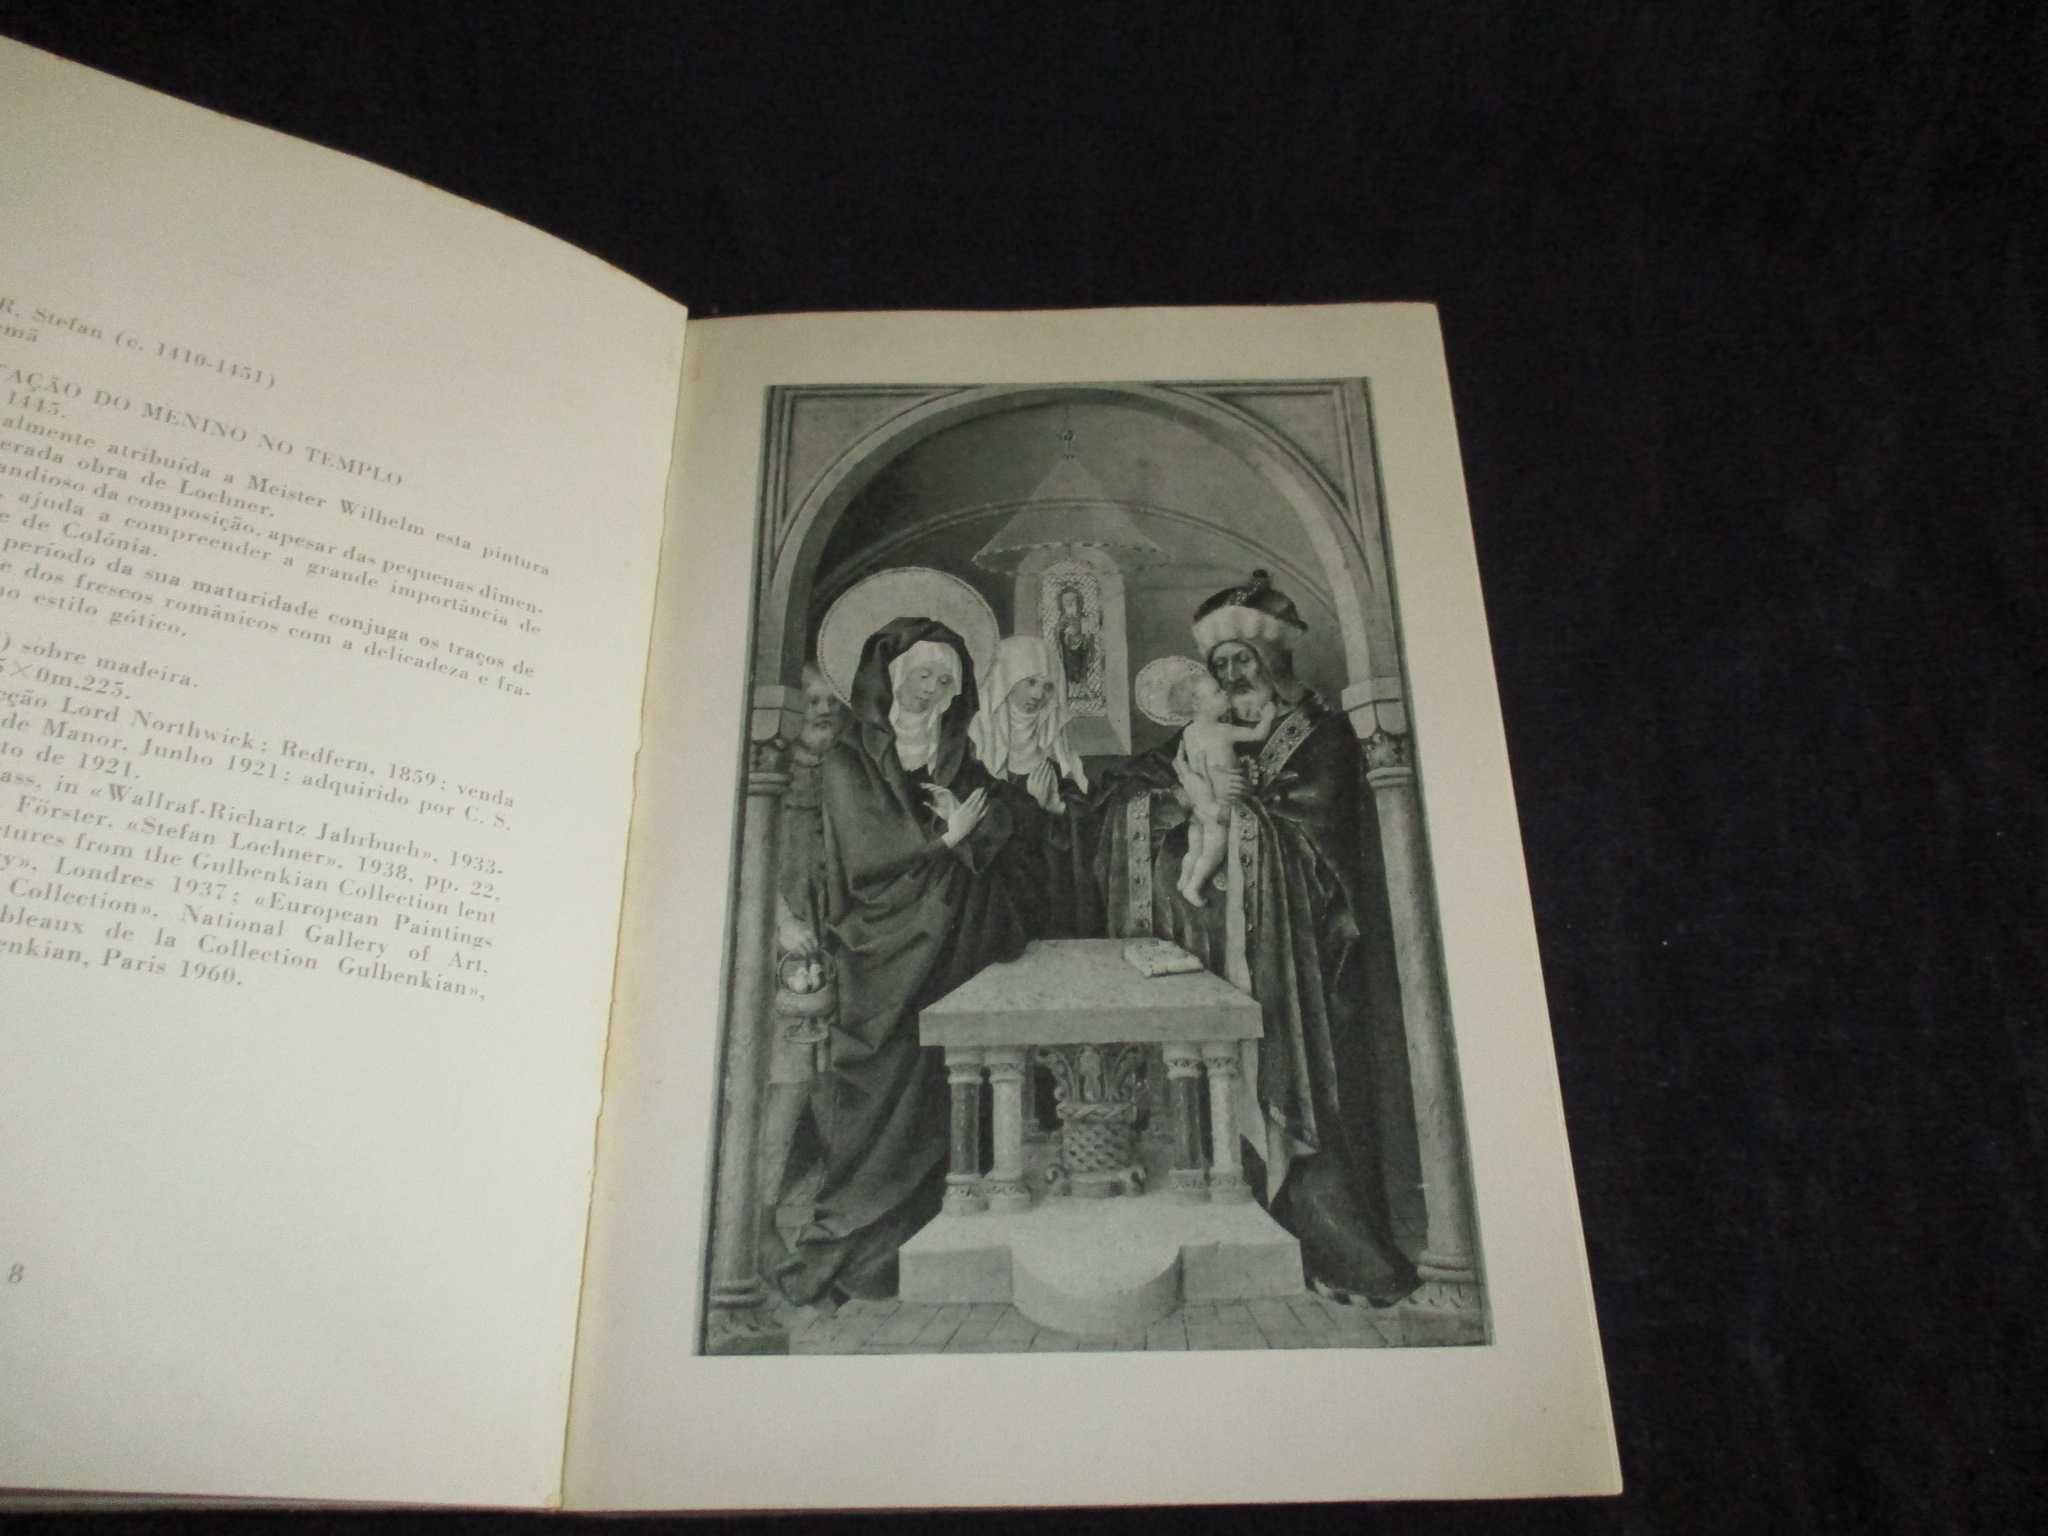 Livro Pinturas da Colecção da Fundação Calouste Gulbenkian 1961